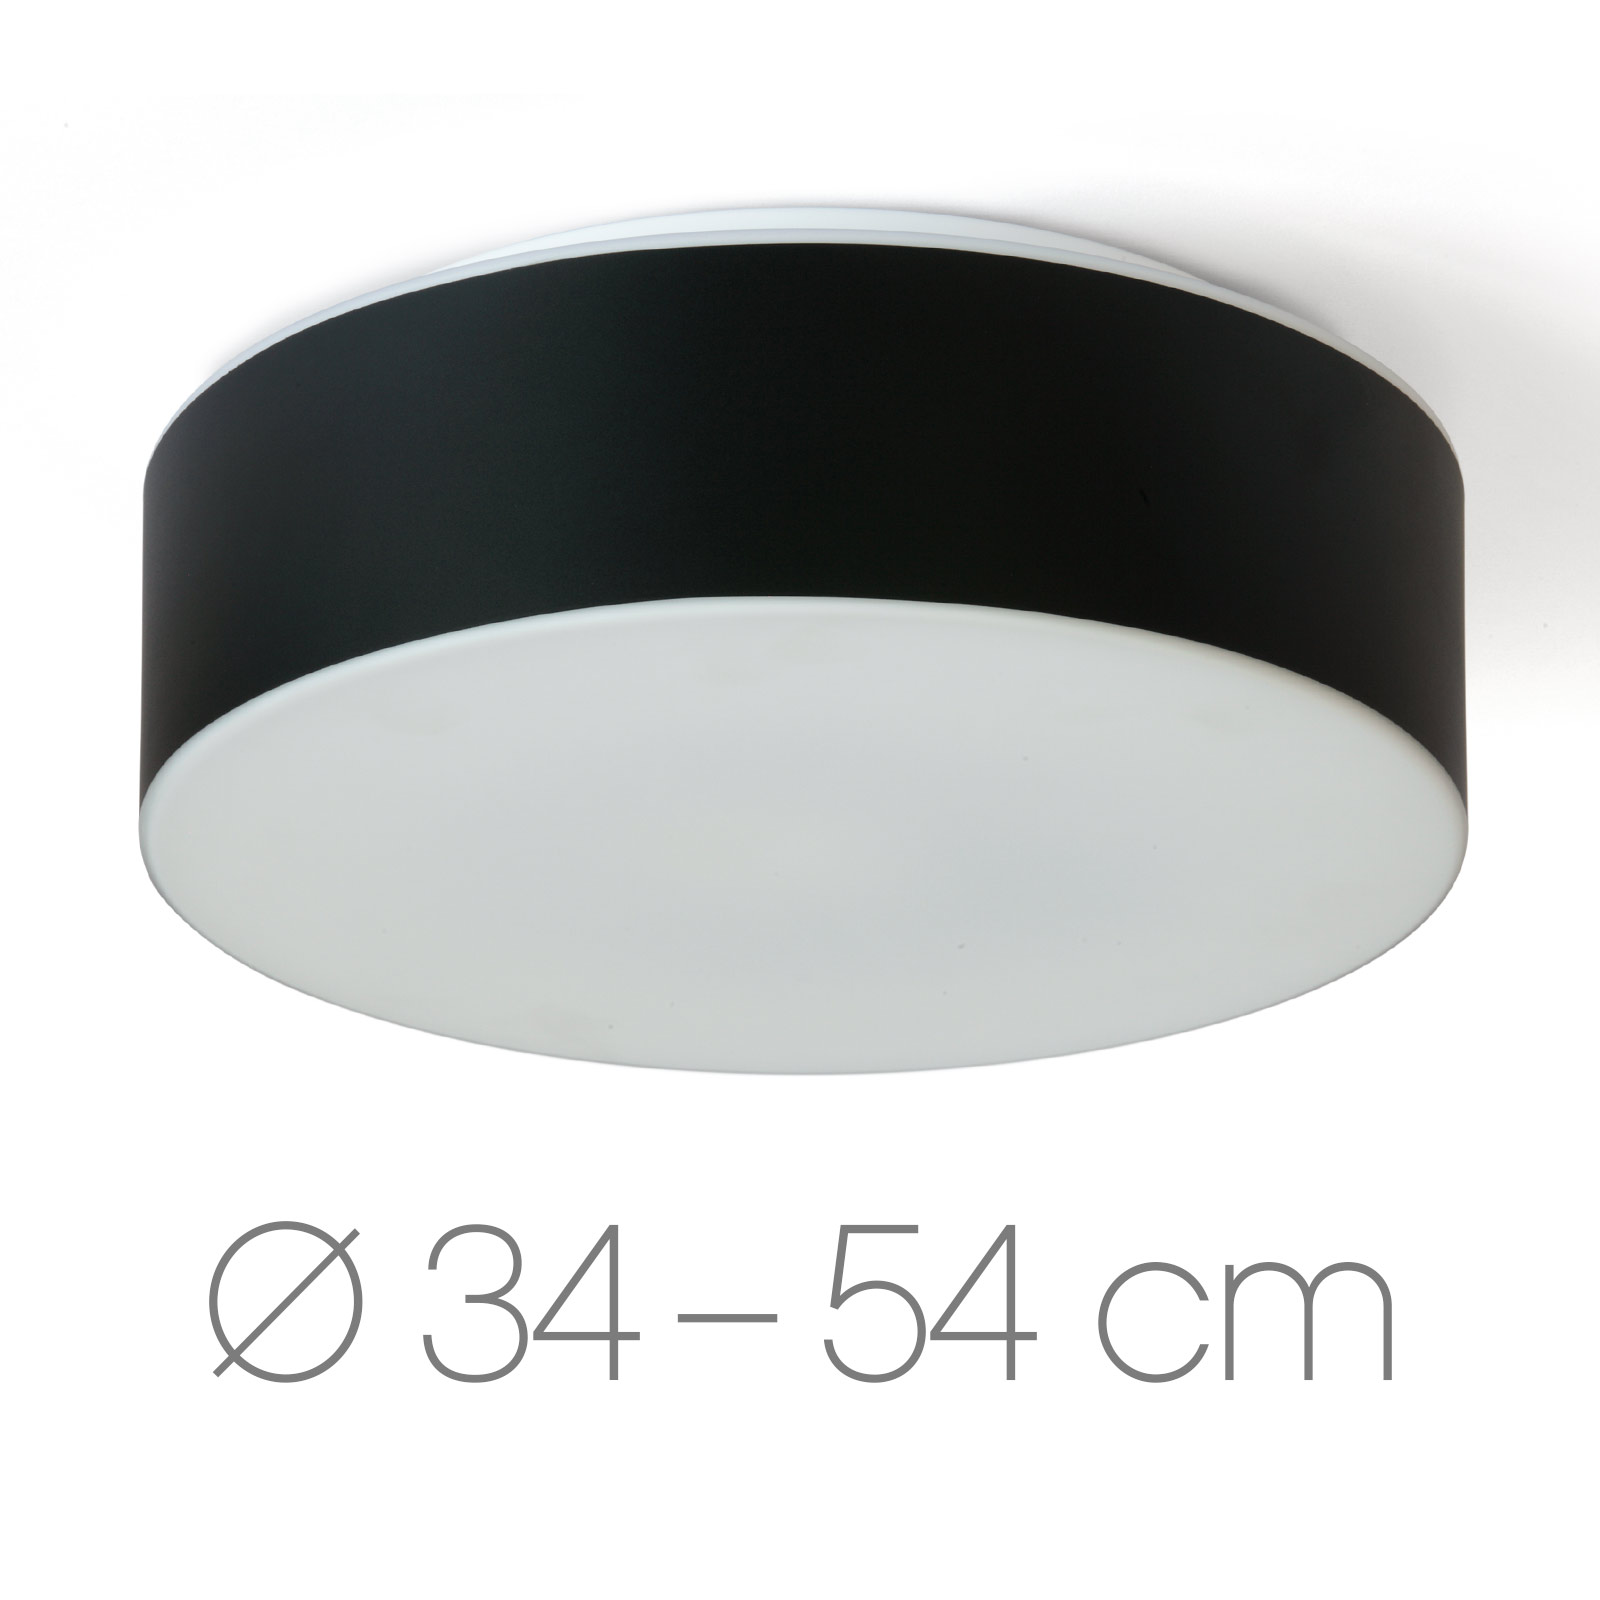 Runde Opalglas-Deckenleuchte ERIK mit schwarzer Blende, Ø 34 bis 54 cm